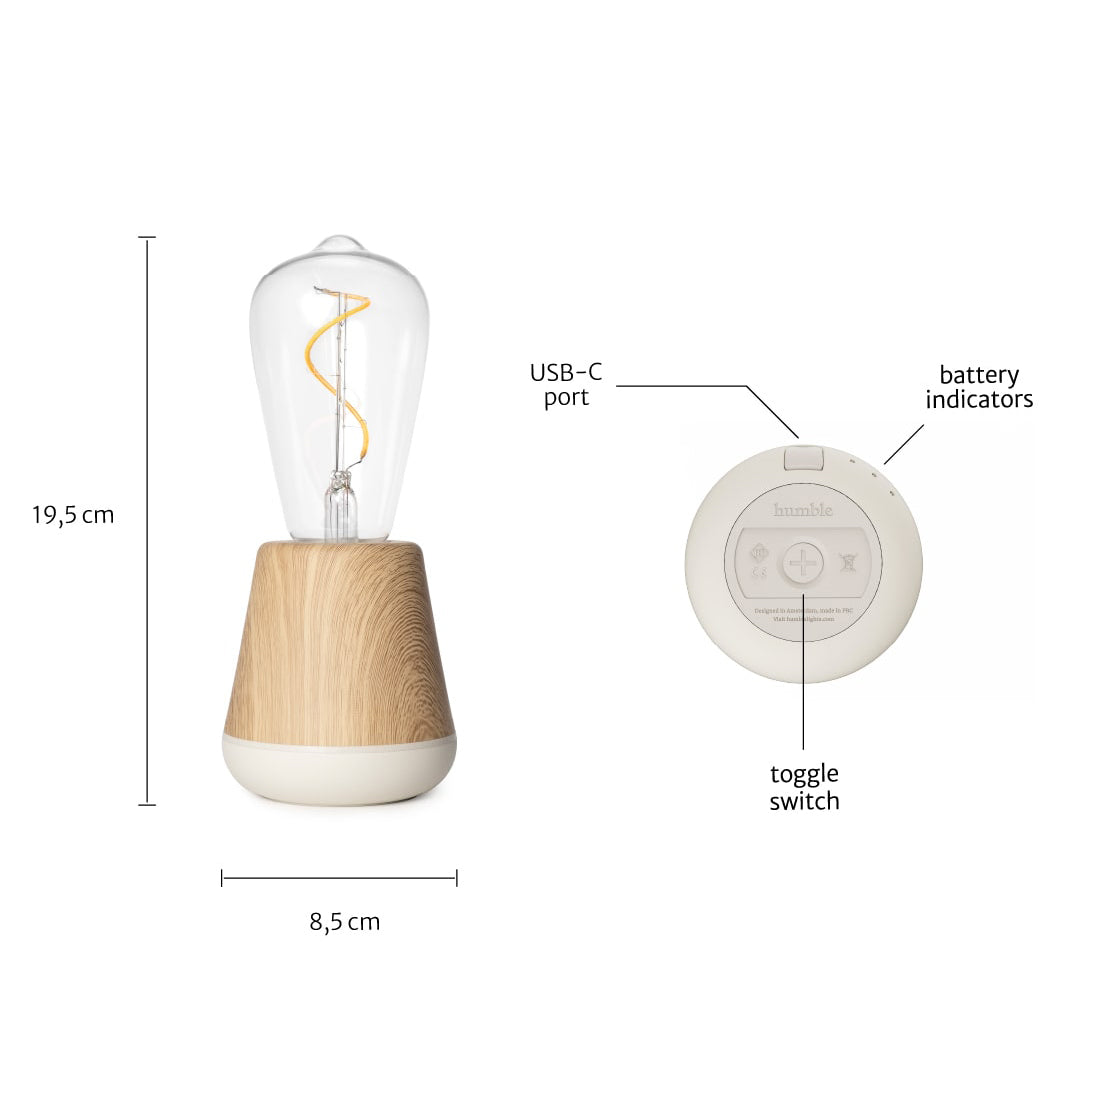 Humble One Smart Oplaadbare Tafellamp Donkergrijs│art. HUMTLS0101│Slimme Verlichting│afmeting en functie toetsen